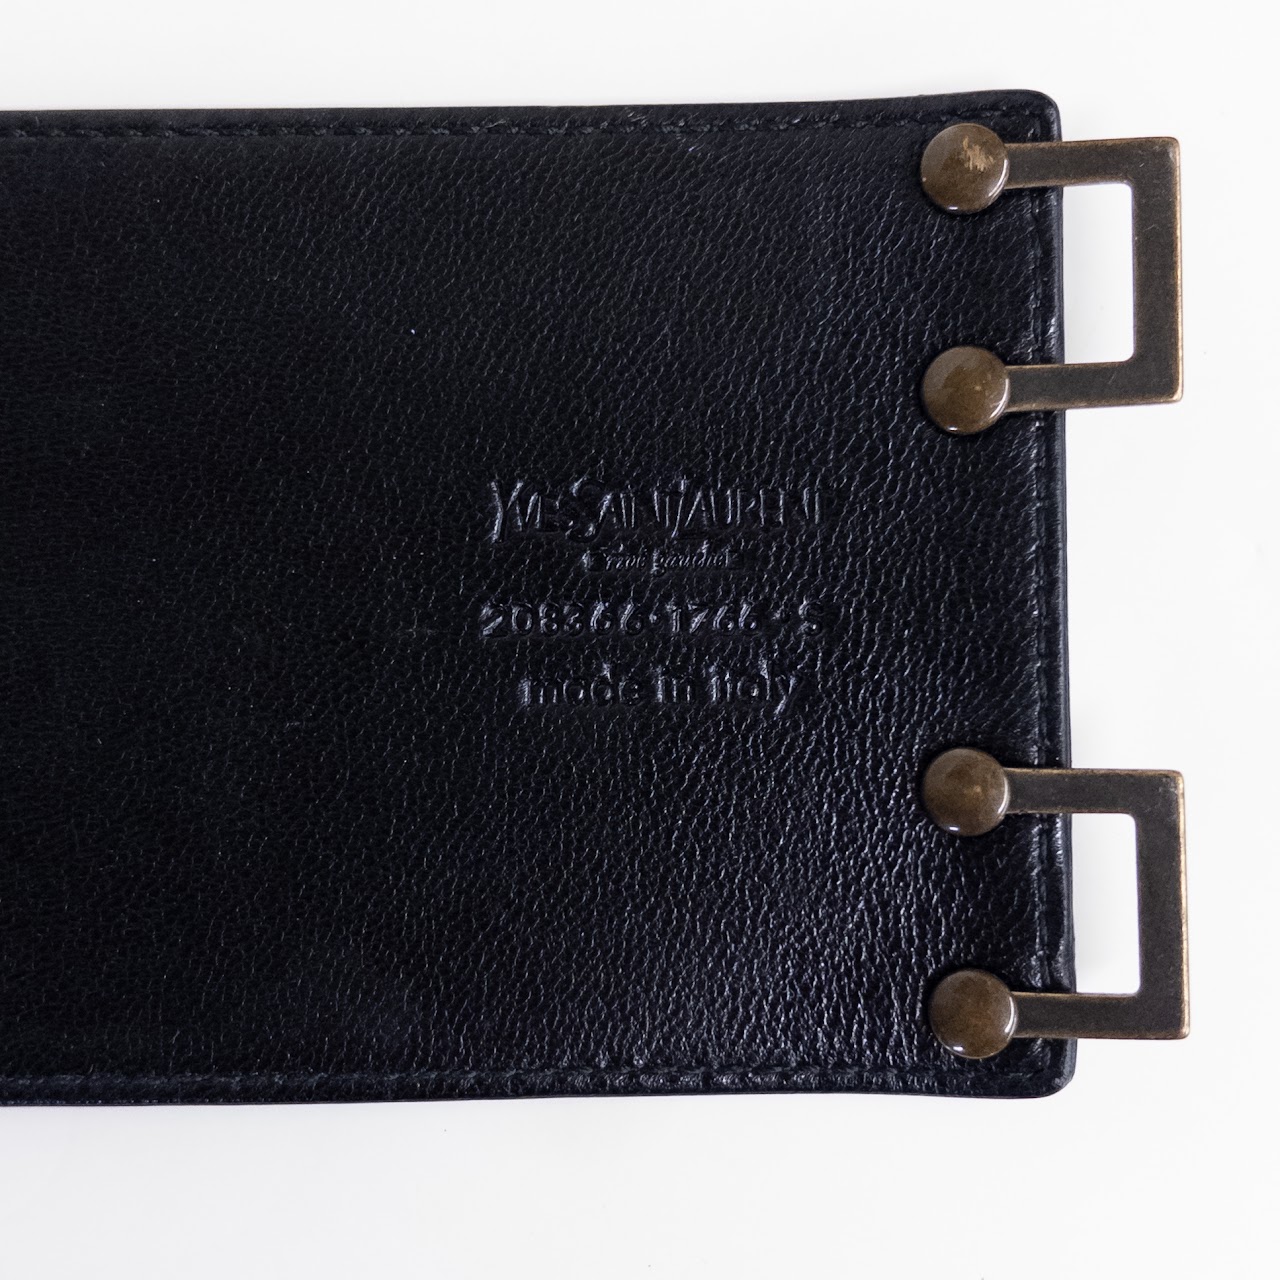 Yves Saint Laurent Patent Leather Belt